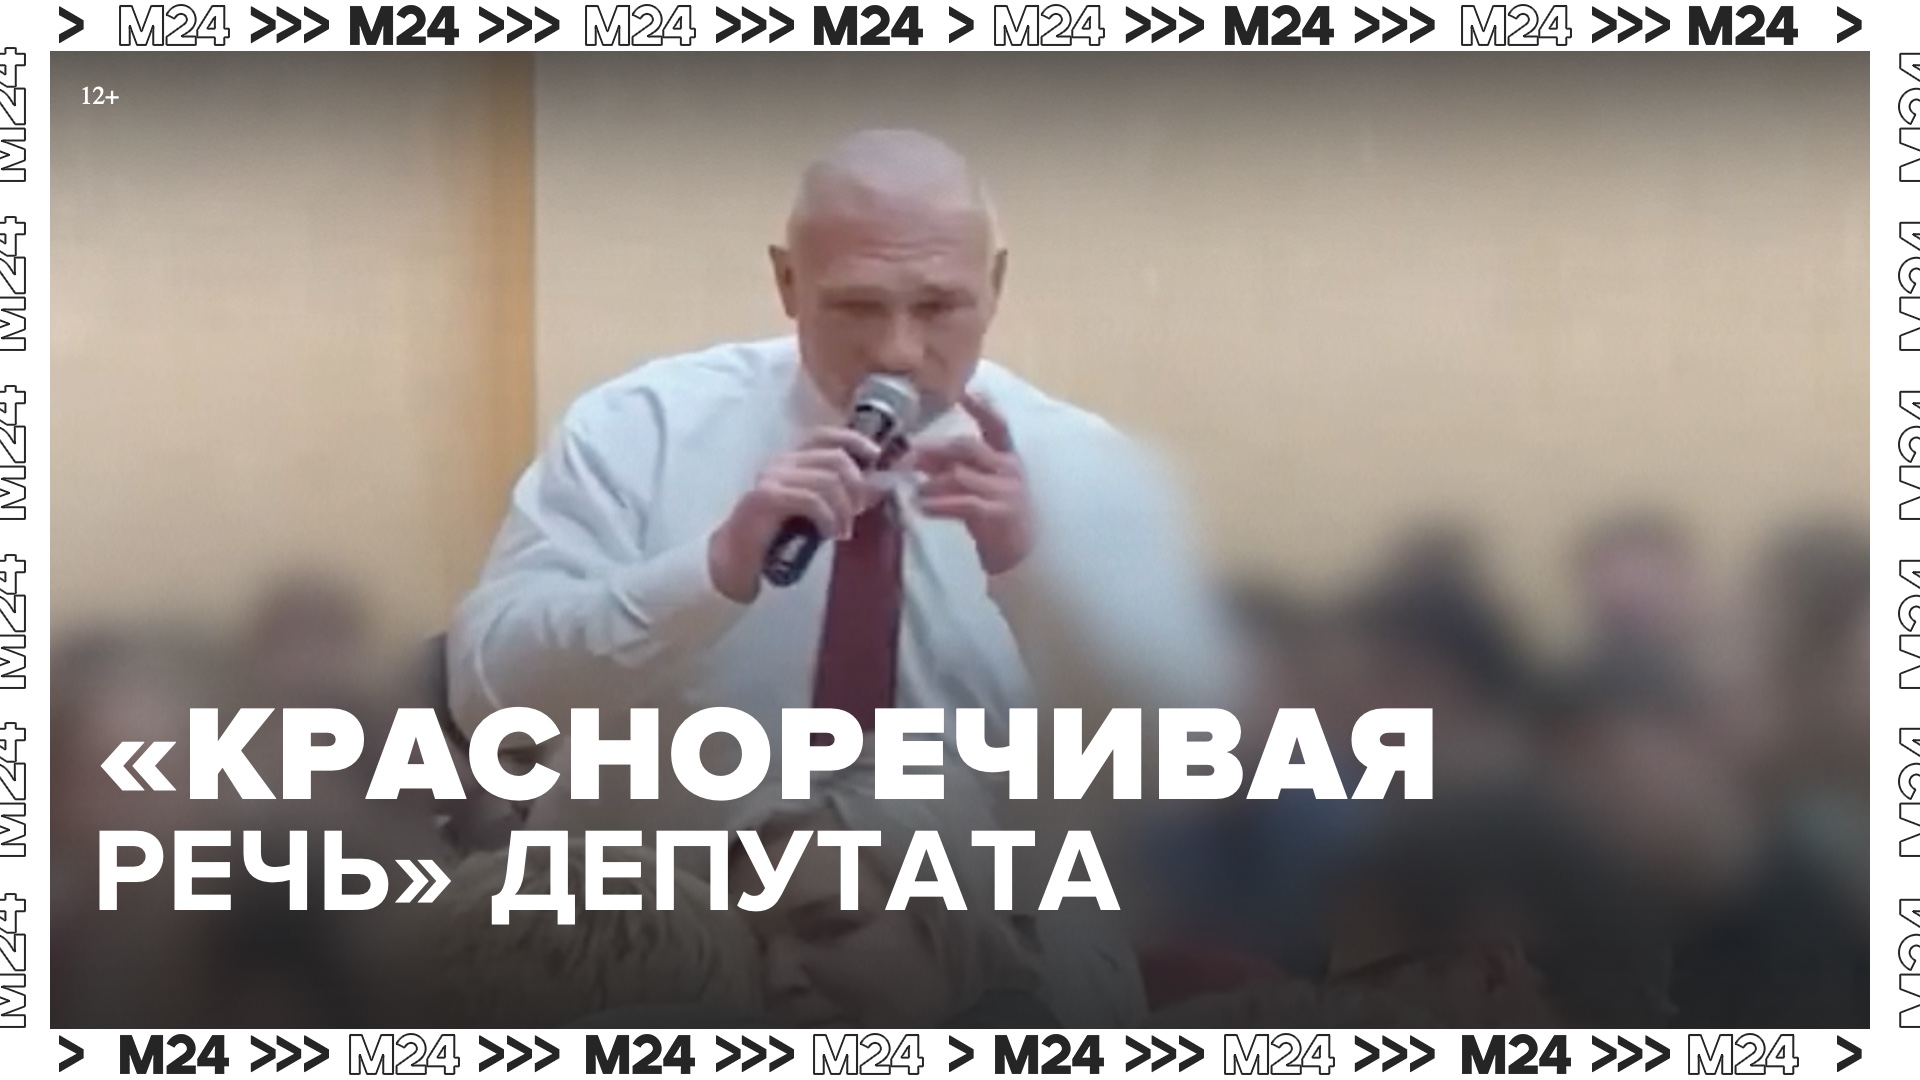 Депутат призвал школьников «не валяться на помойке» - Москва 24